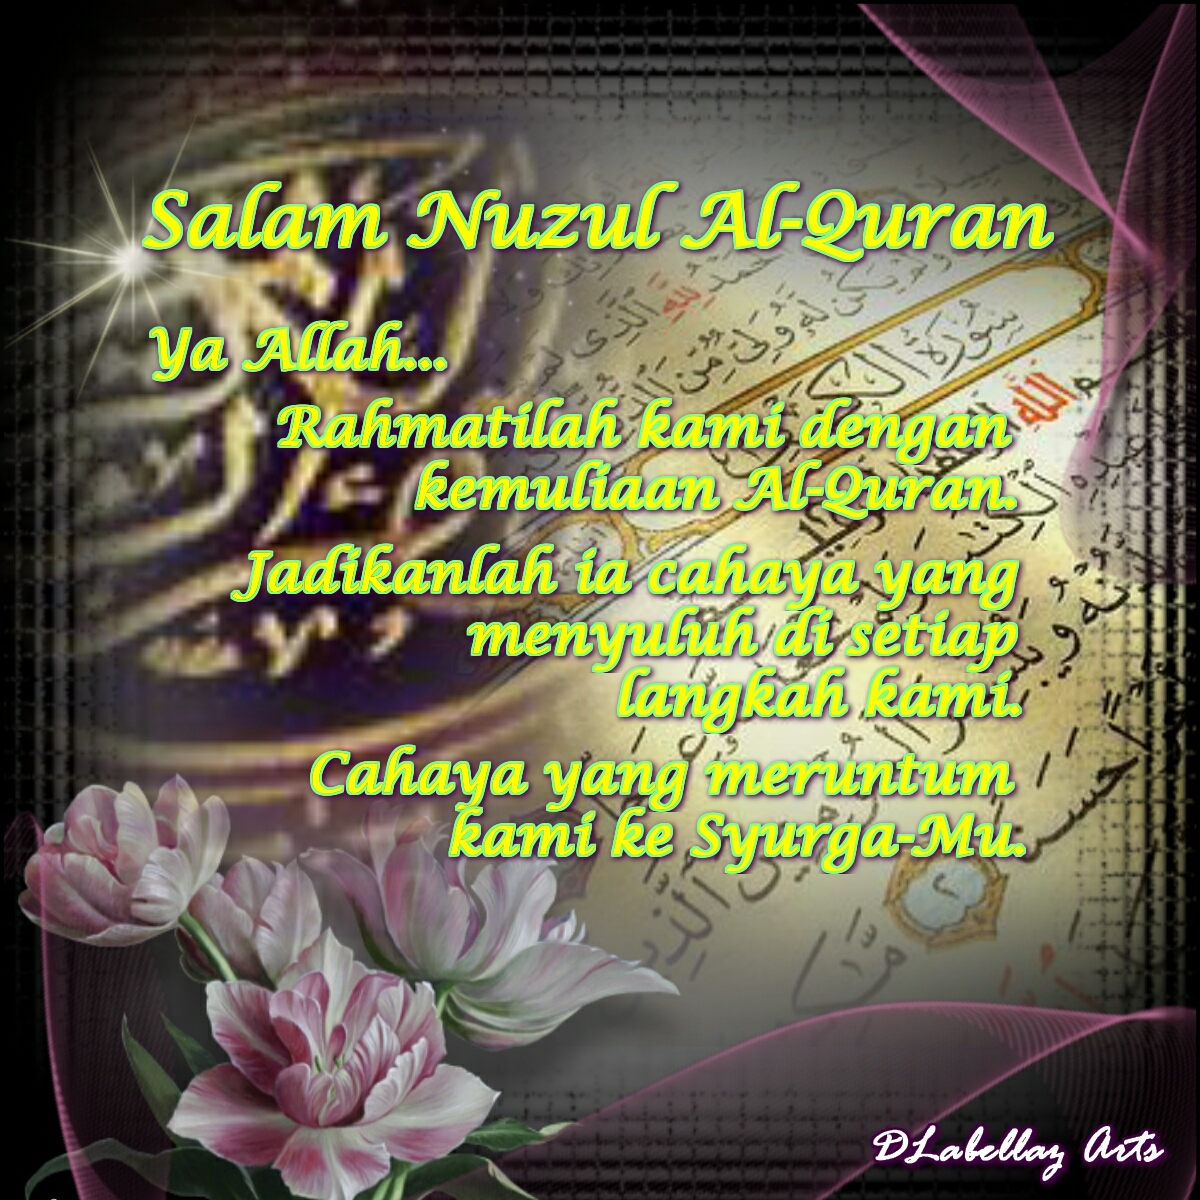 Quran salam nuzul Salam Nuzul